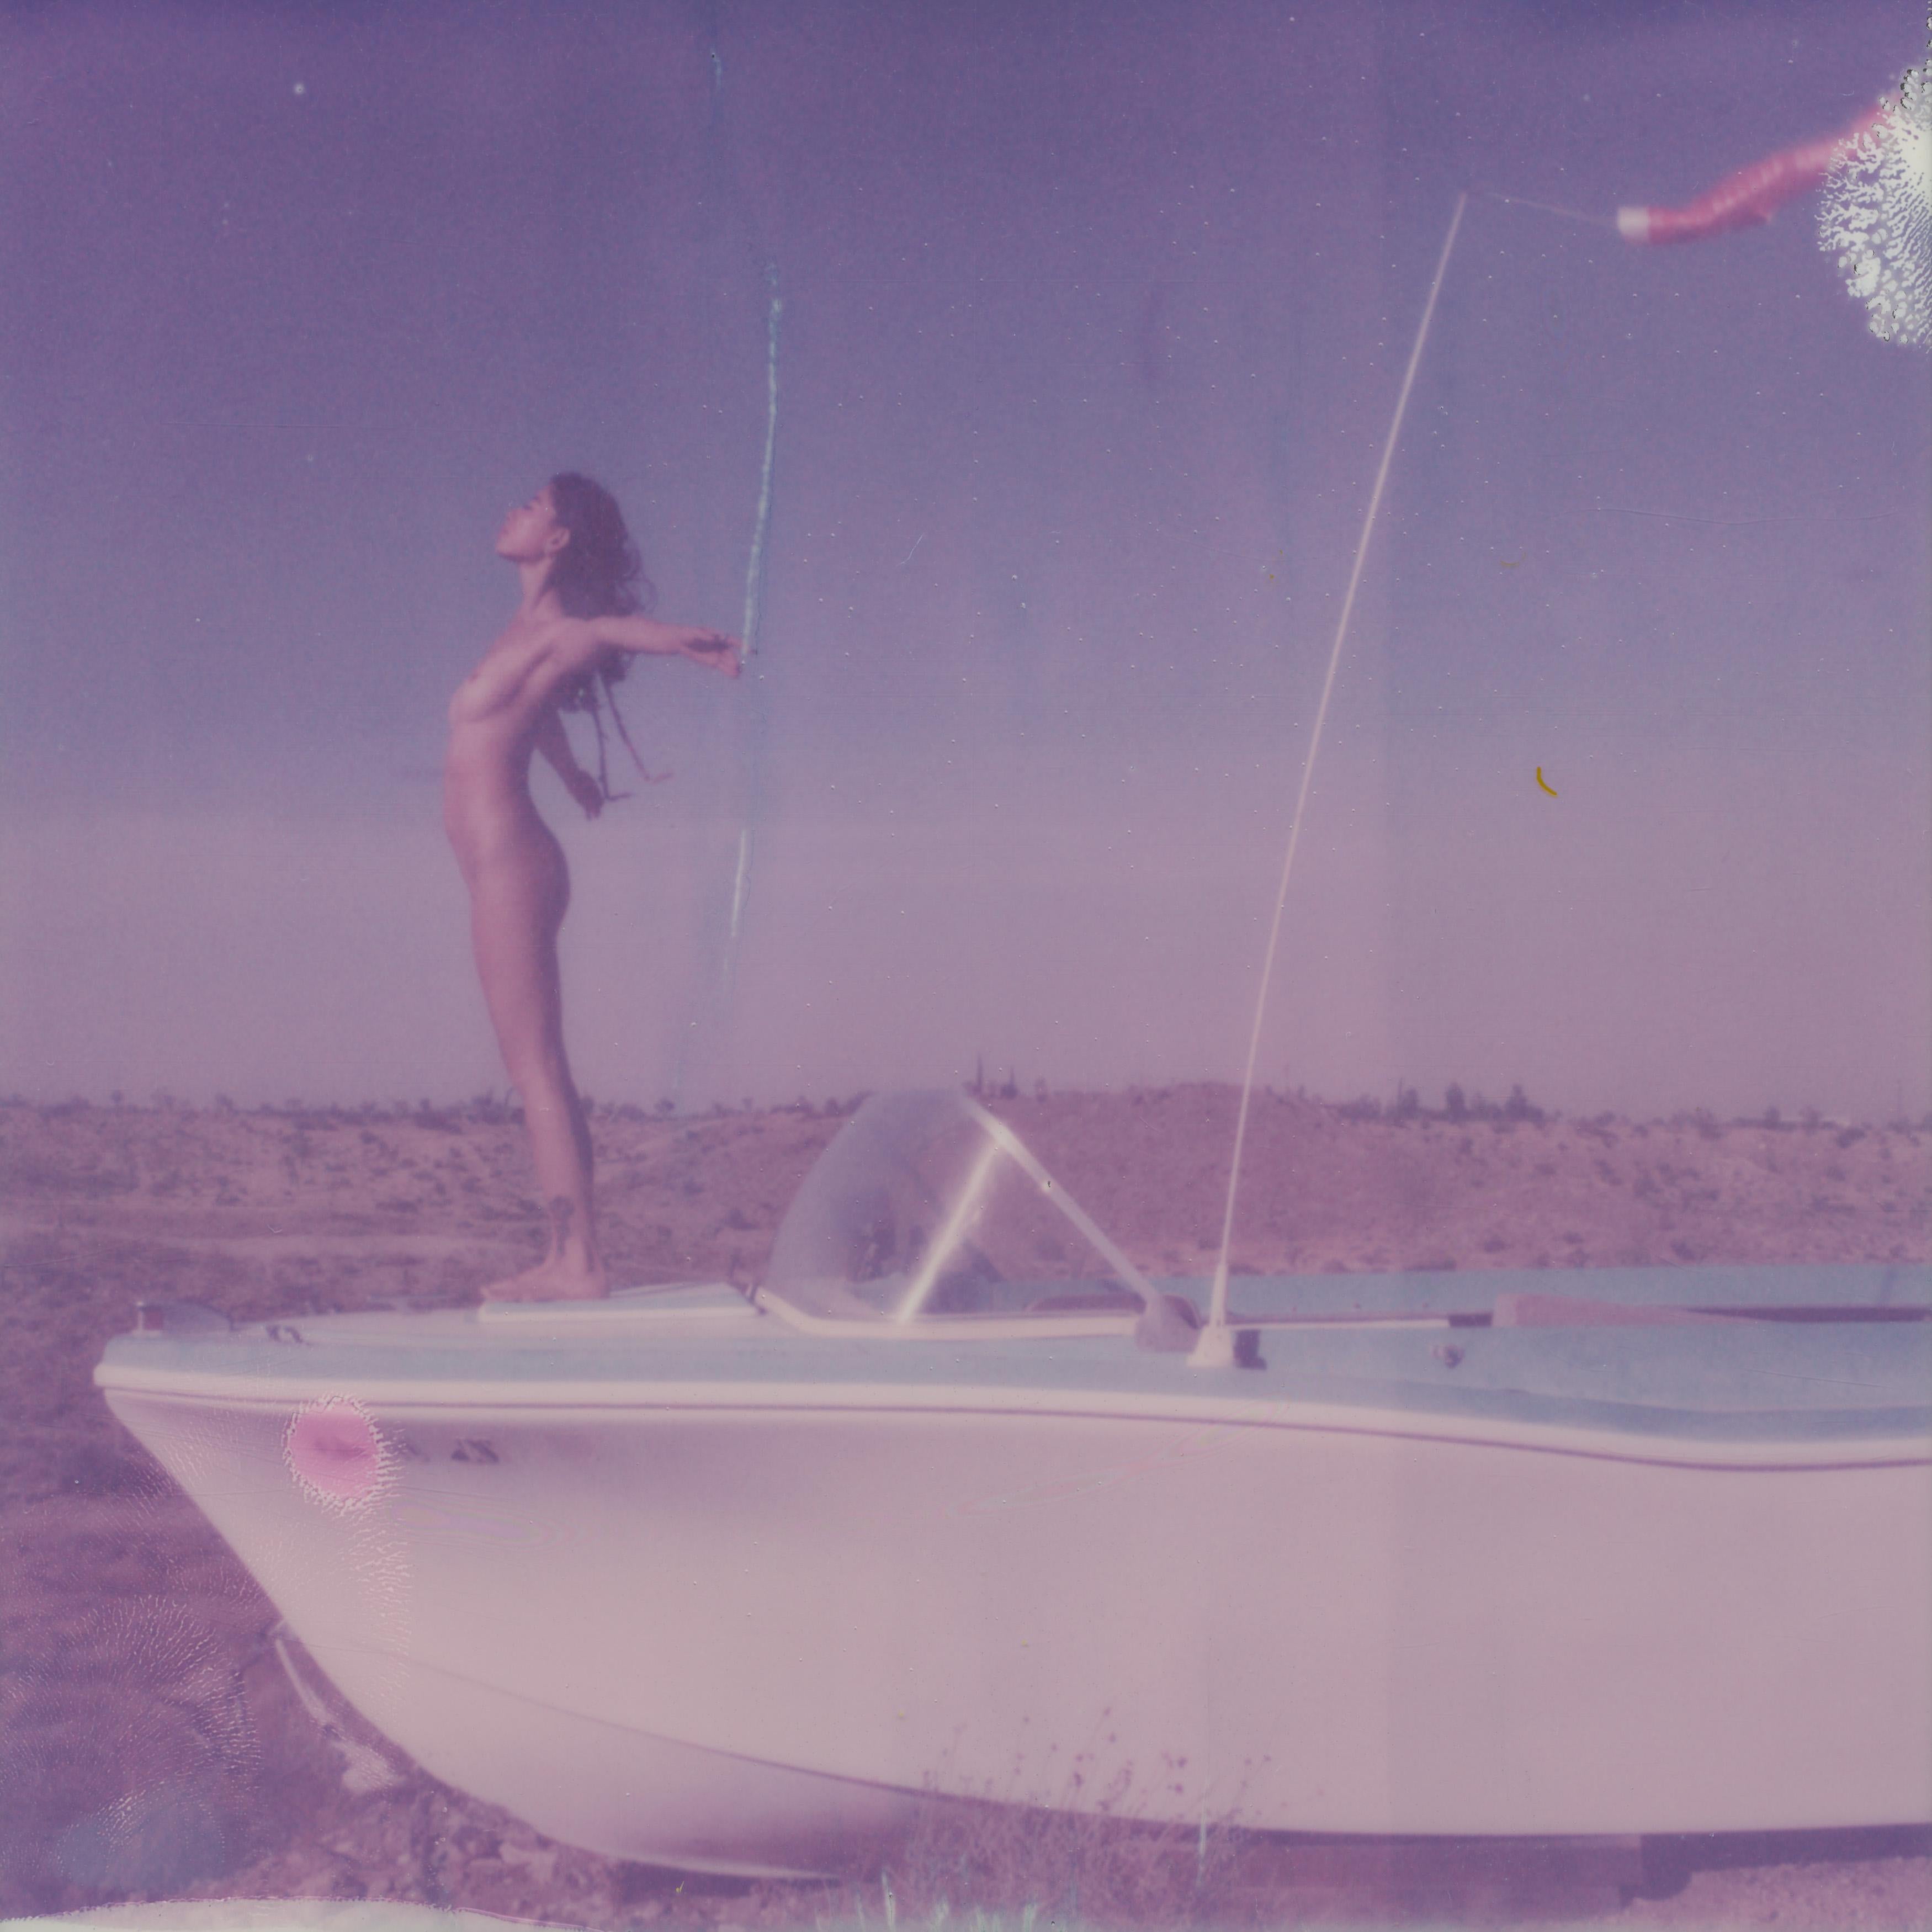 Kirsten Thys van den Audenaerde Nude Photograph - Boat to Nowhere - Contemporary, Polaroid, Nude, 21st Century, Joshua Tree